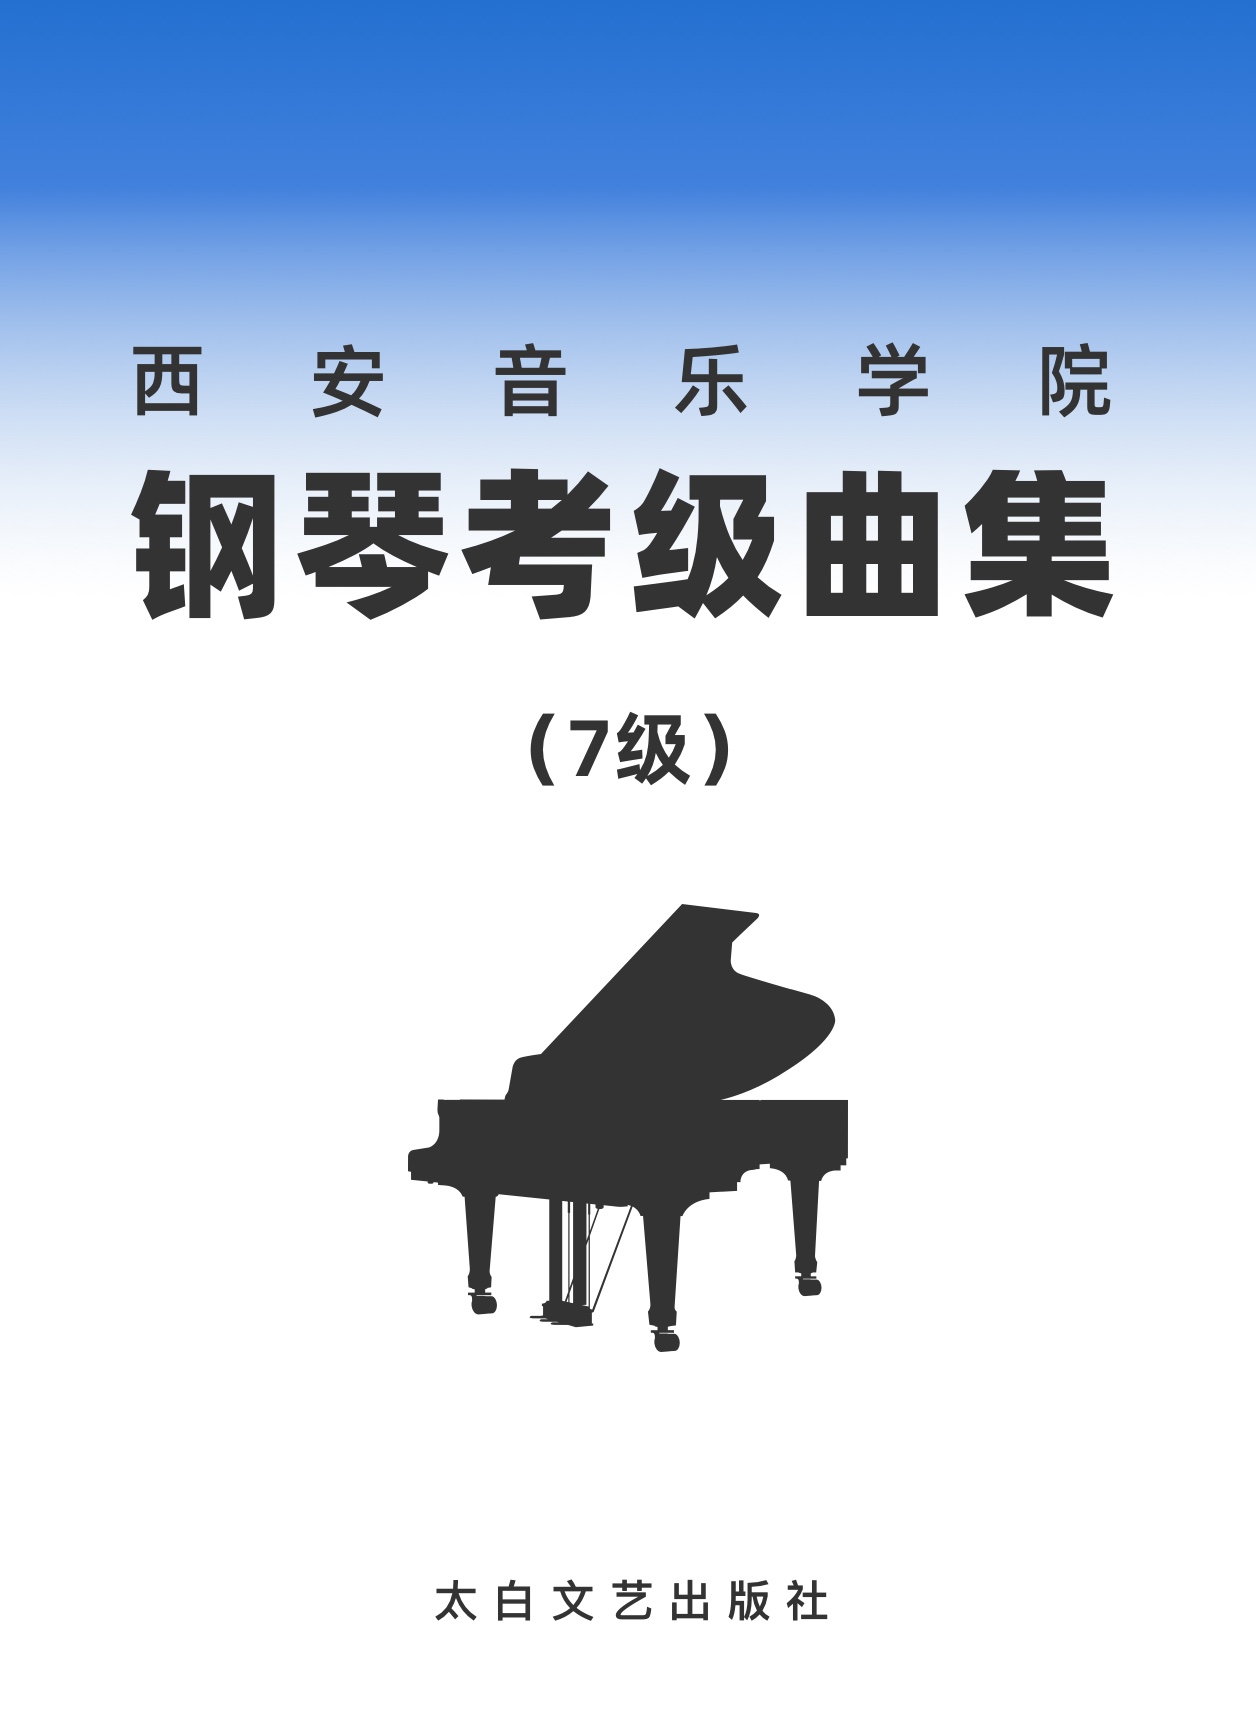 12第七级 降B小调琶音钢琴简谱 数字双手